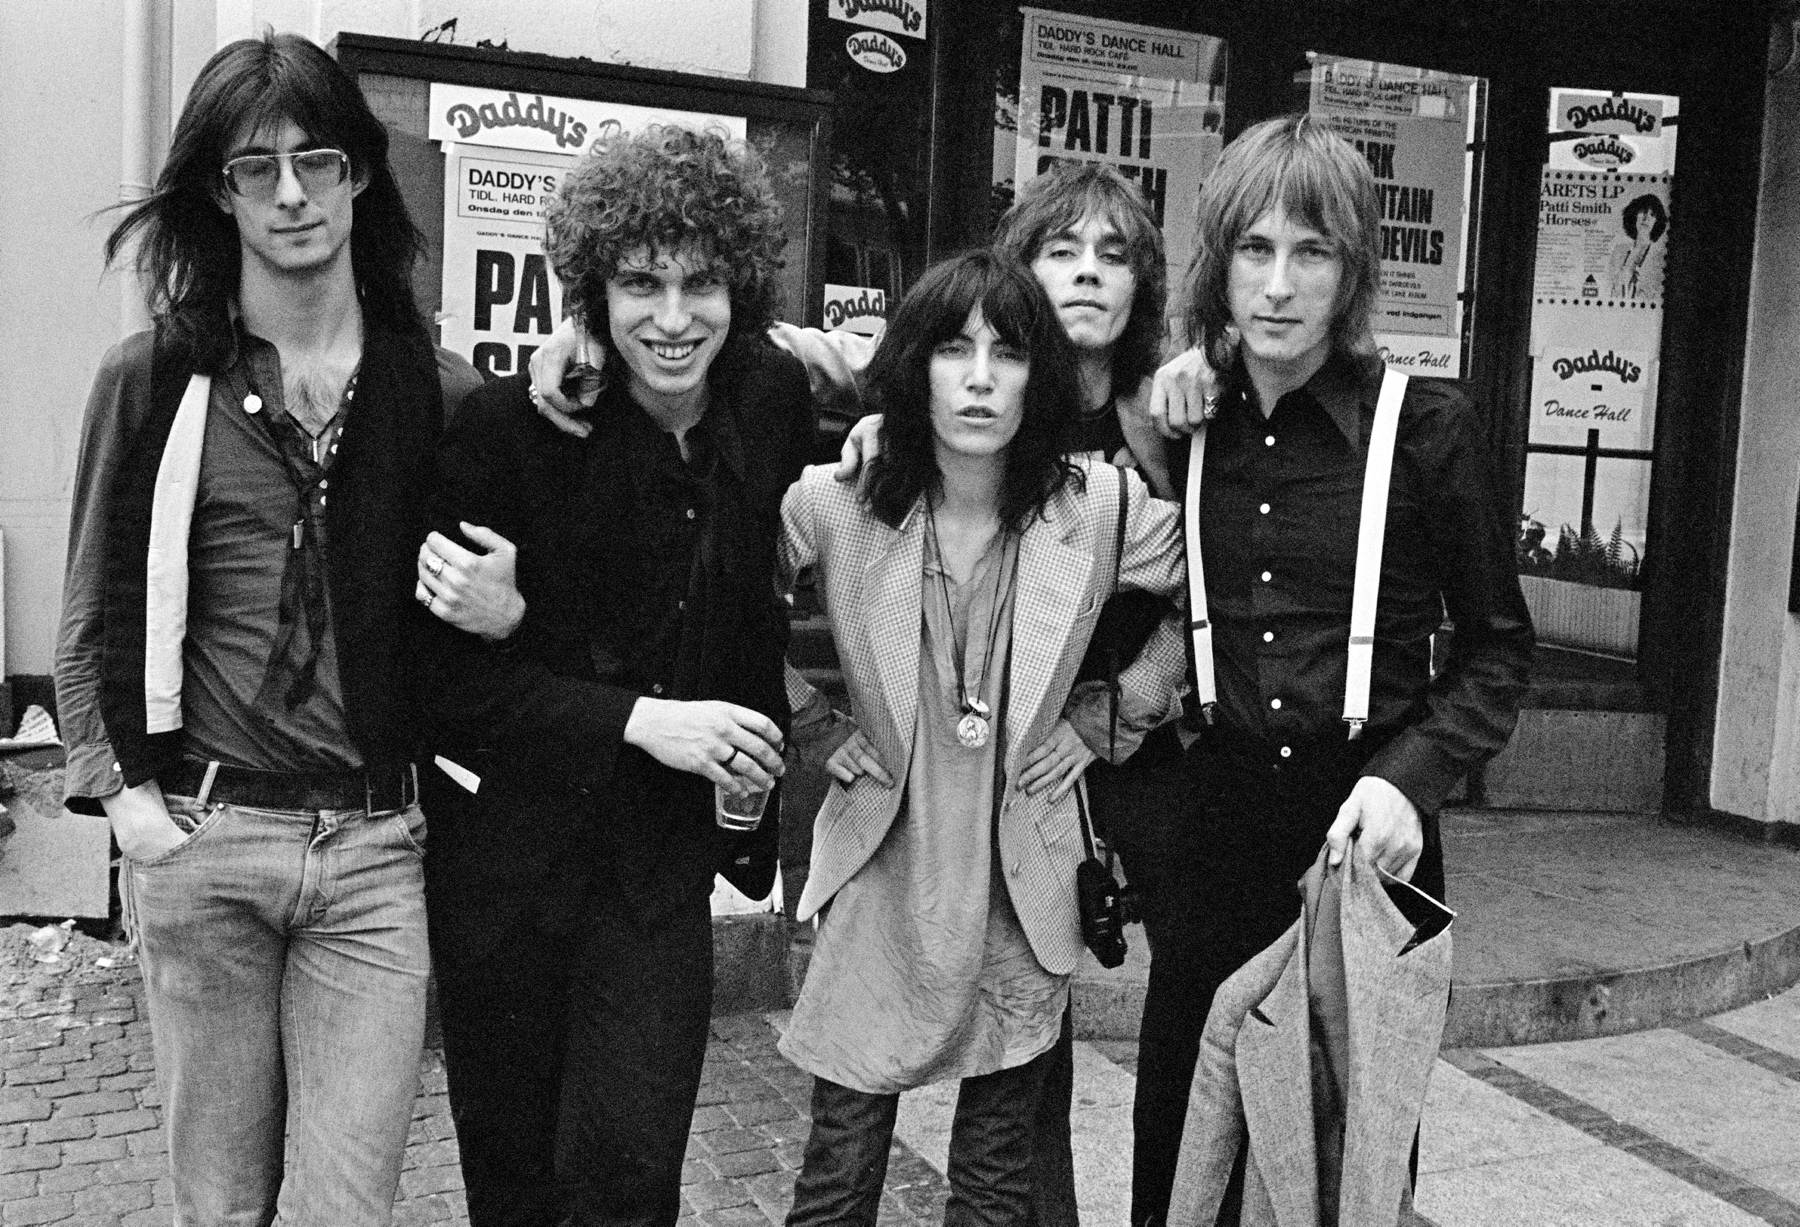 Grupa Patti Smith podczas trasy koncertowej w Kopenhadze, maj 1976 r. Od lewej stoją: Lenny Kaye, Richard Sohl, Patti Smith, Ivan Kral i Jay Dee Daugherty